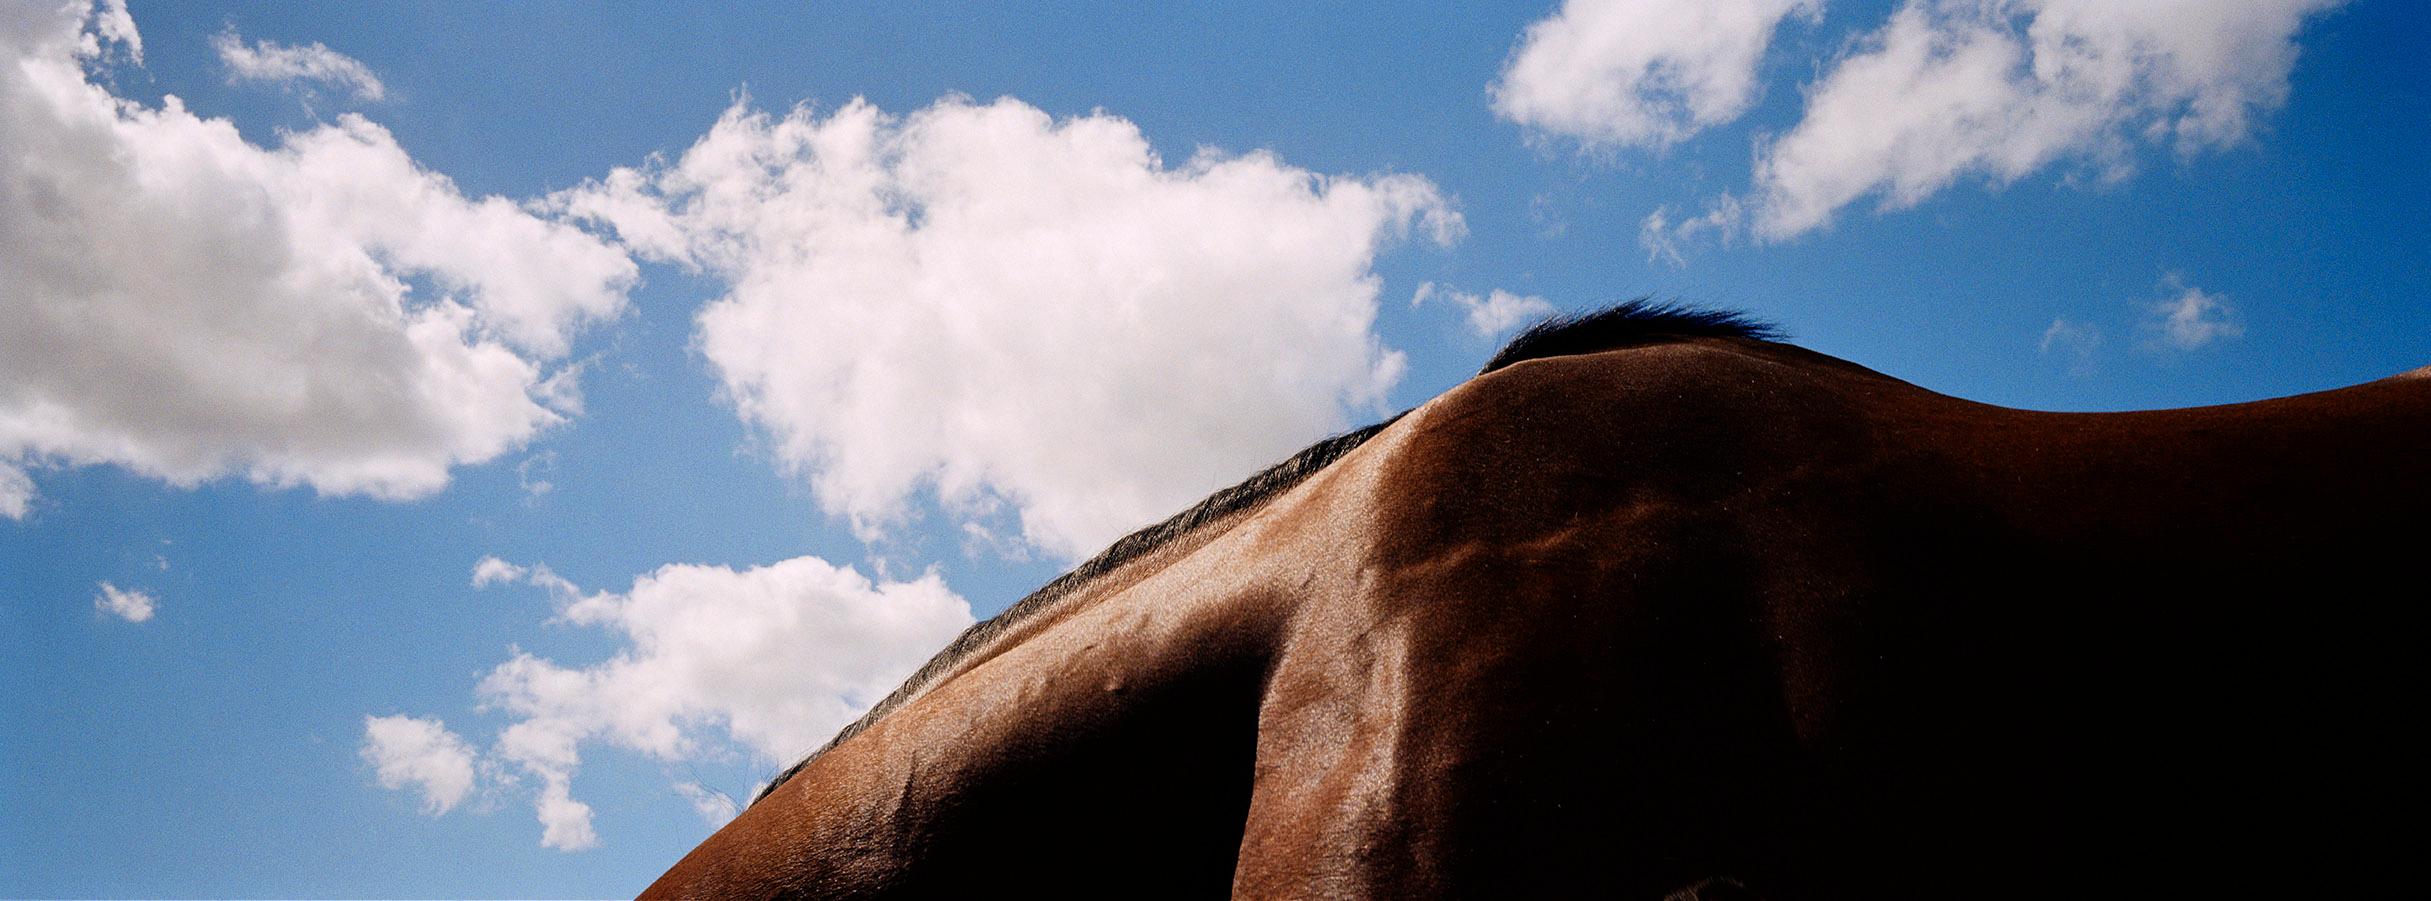 John Reardon Animal Print – Noverre – Pferdelandschaft I, Blauer Himmel und Wolken, Panoramic-Druck, Australien 